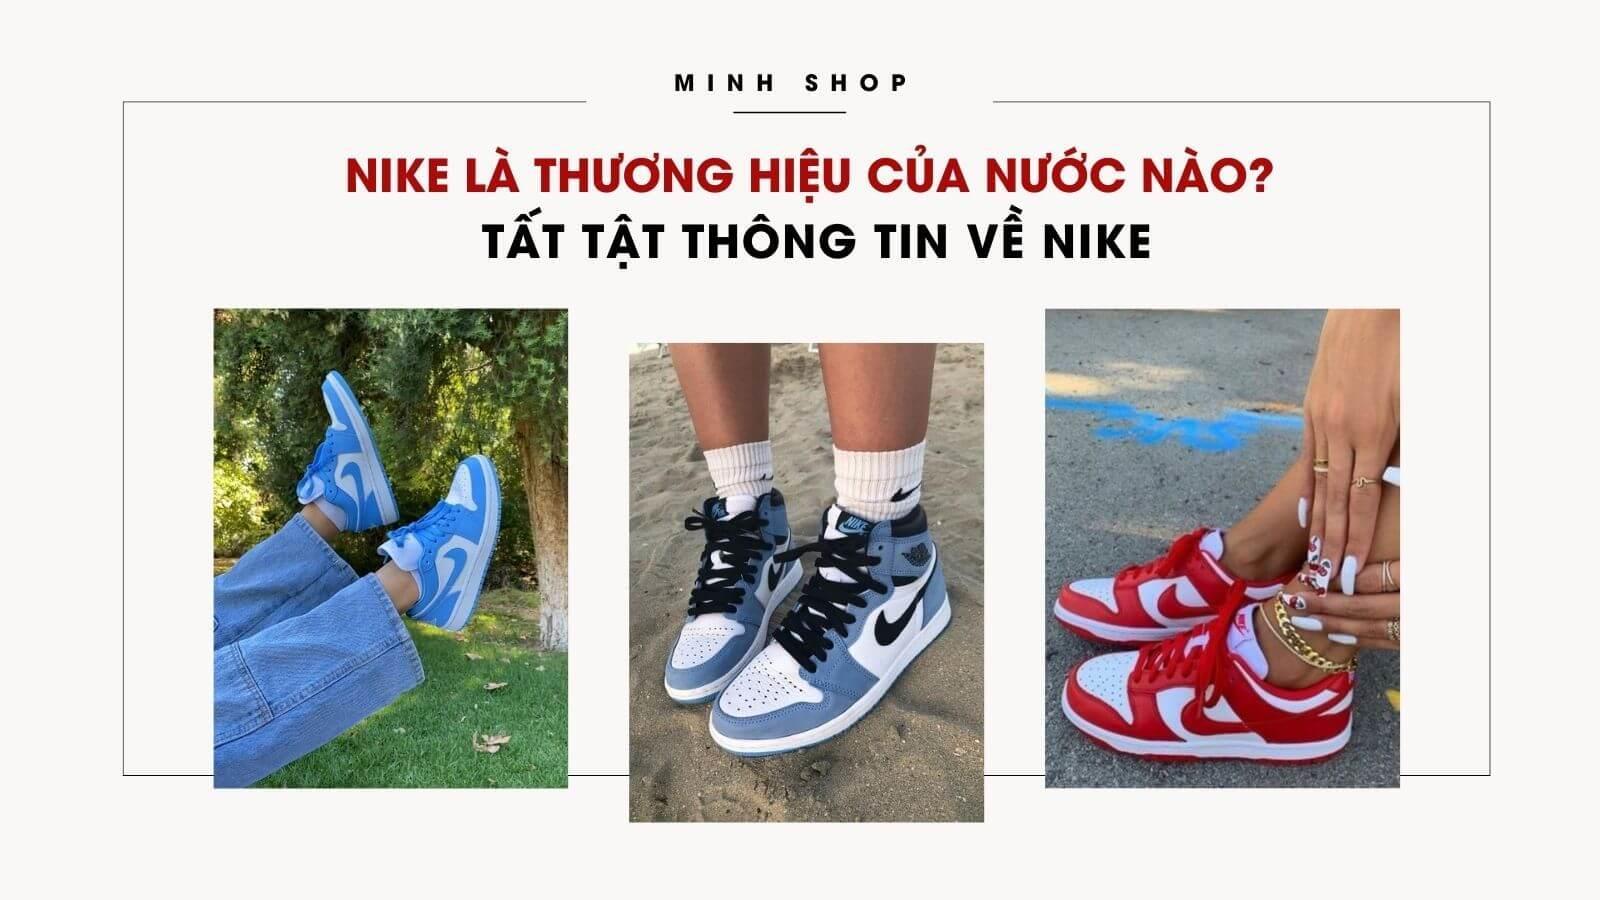 nike-la-thuong-hieu-cua-nuoc-nao-tat-tat-thong-tin-ve-nike